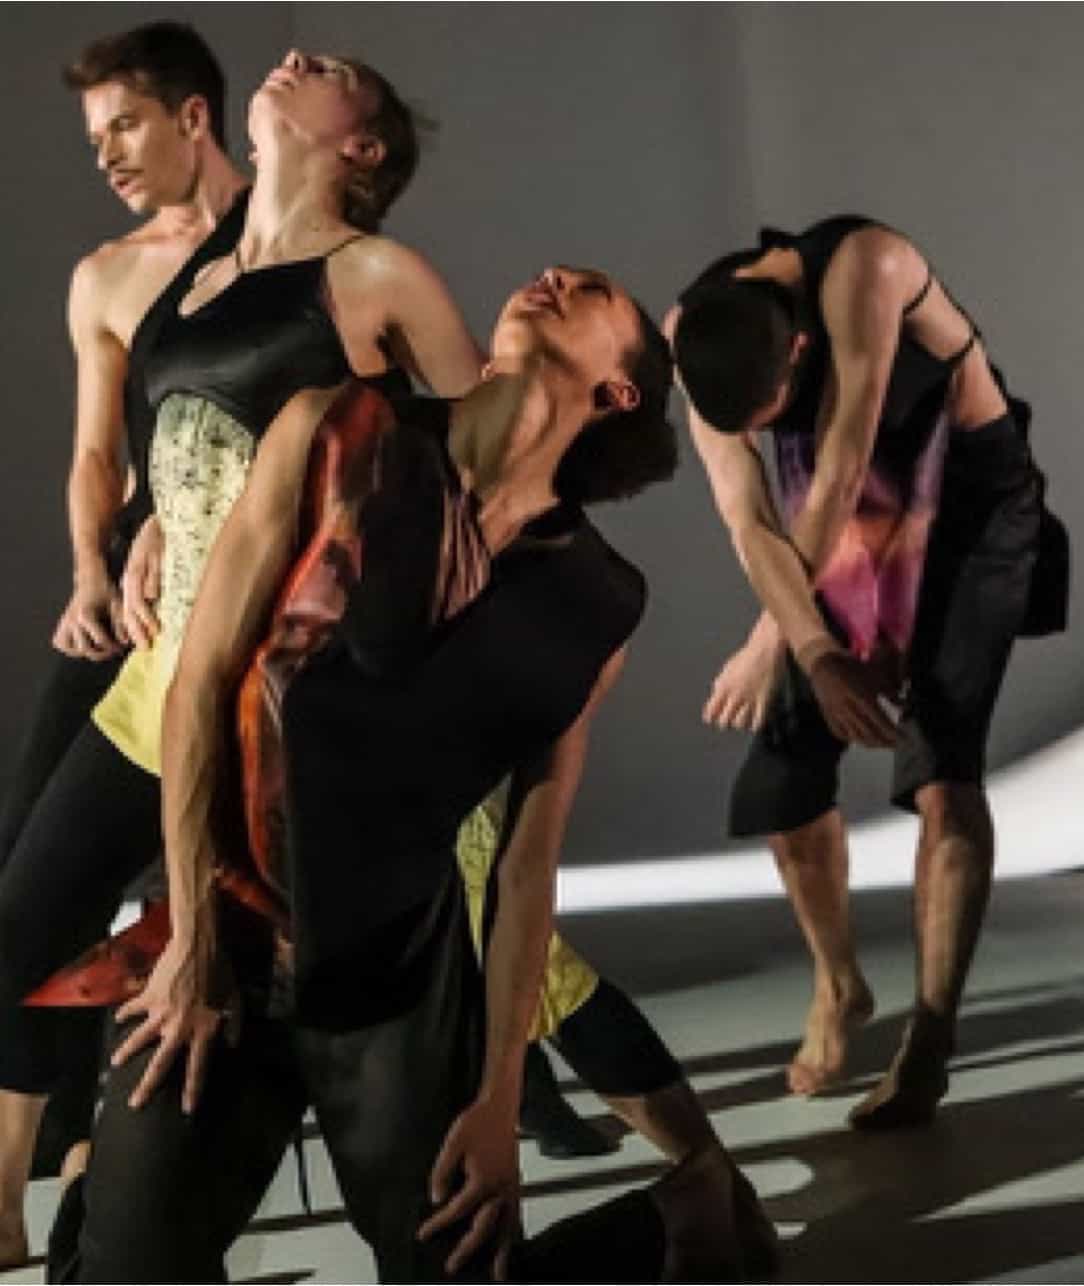 REPORTÉ - Hear Eyes Move. Dances With Ligeti / Elisabeth Schilling & Cathy Krier